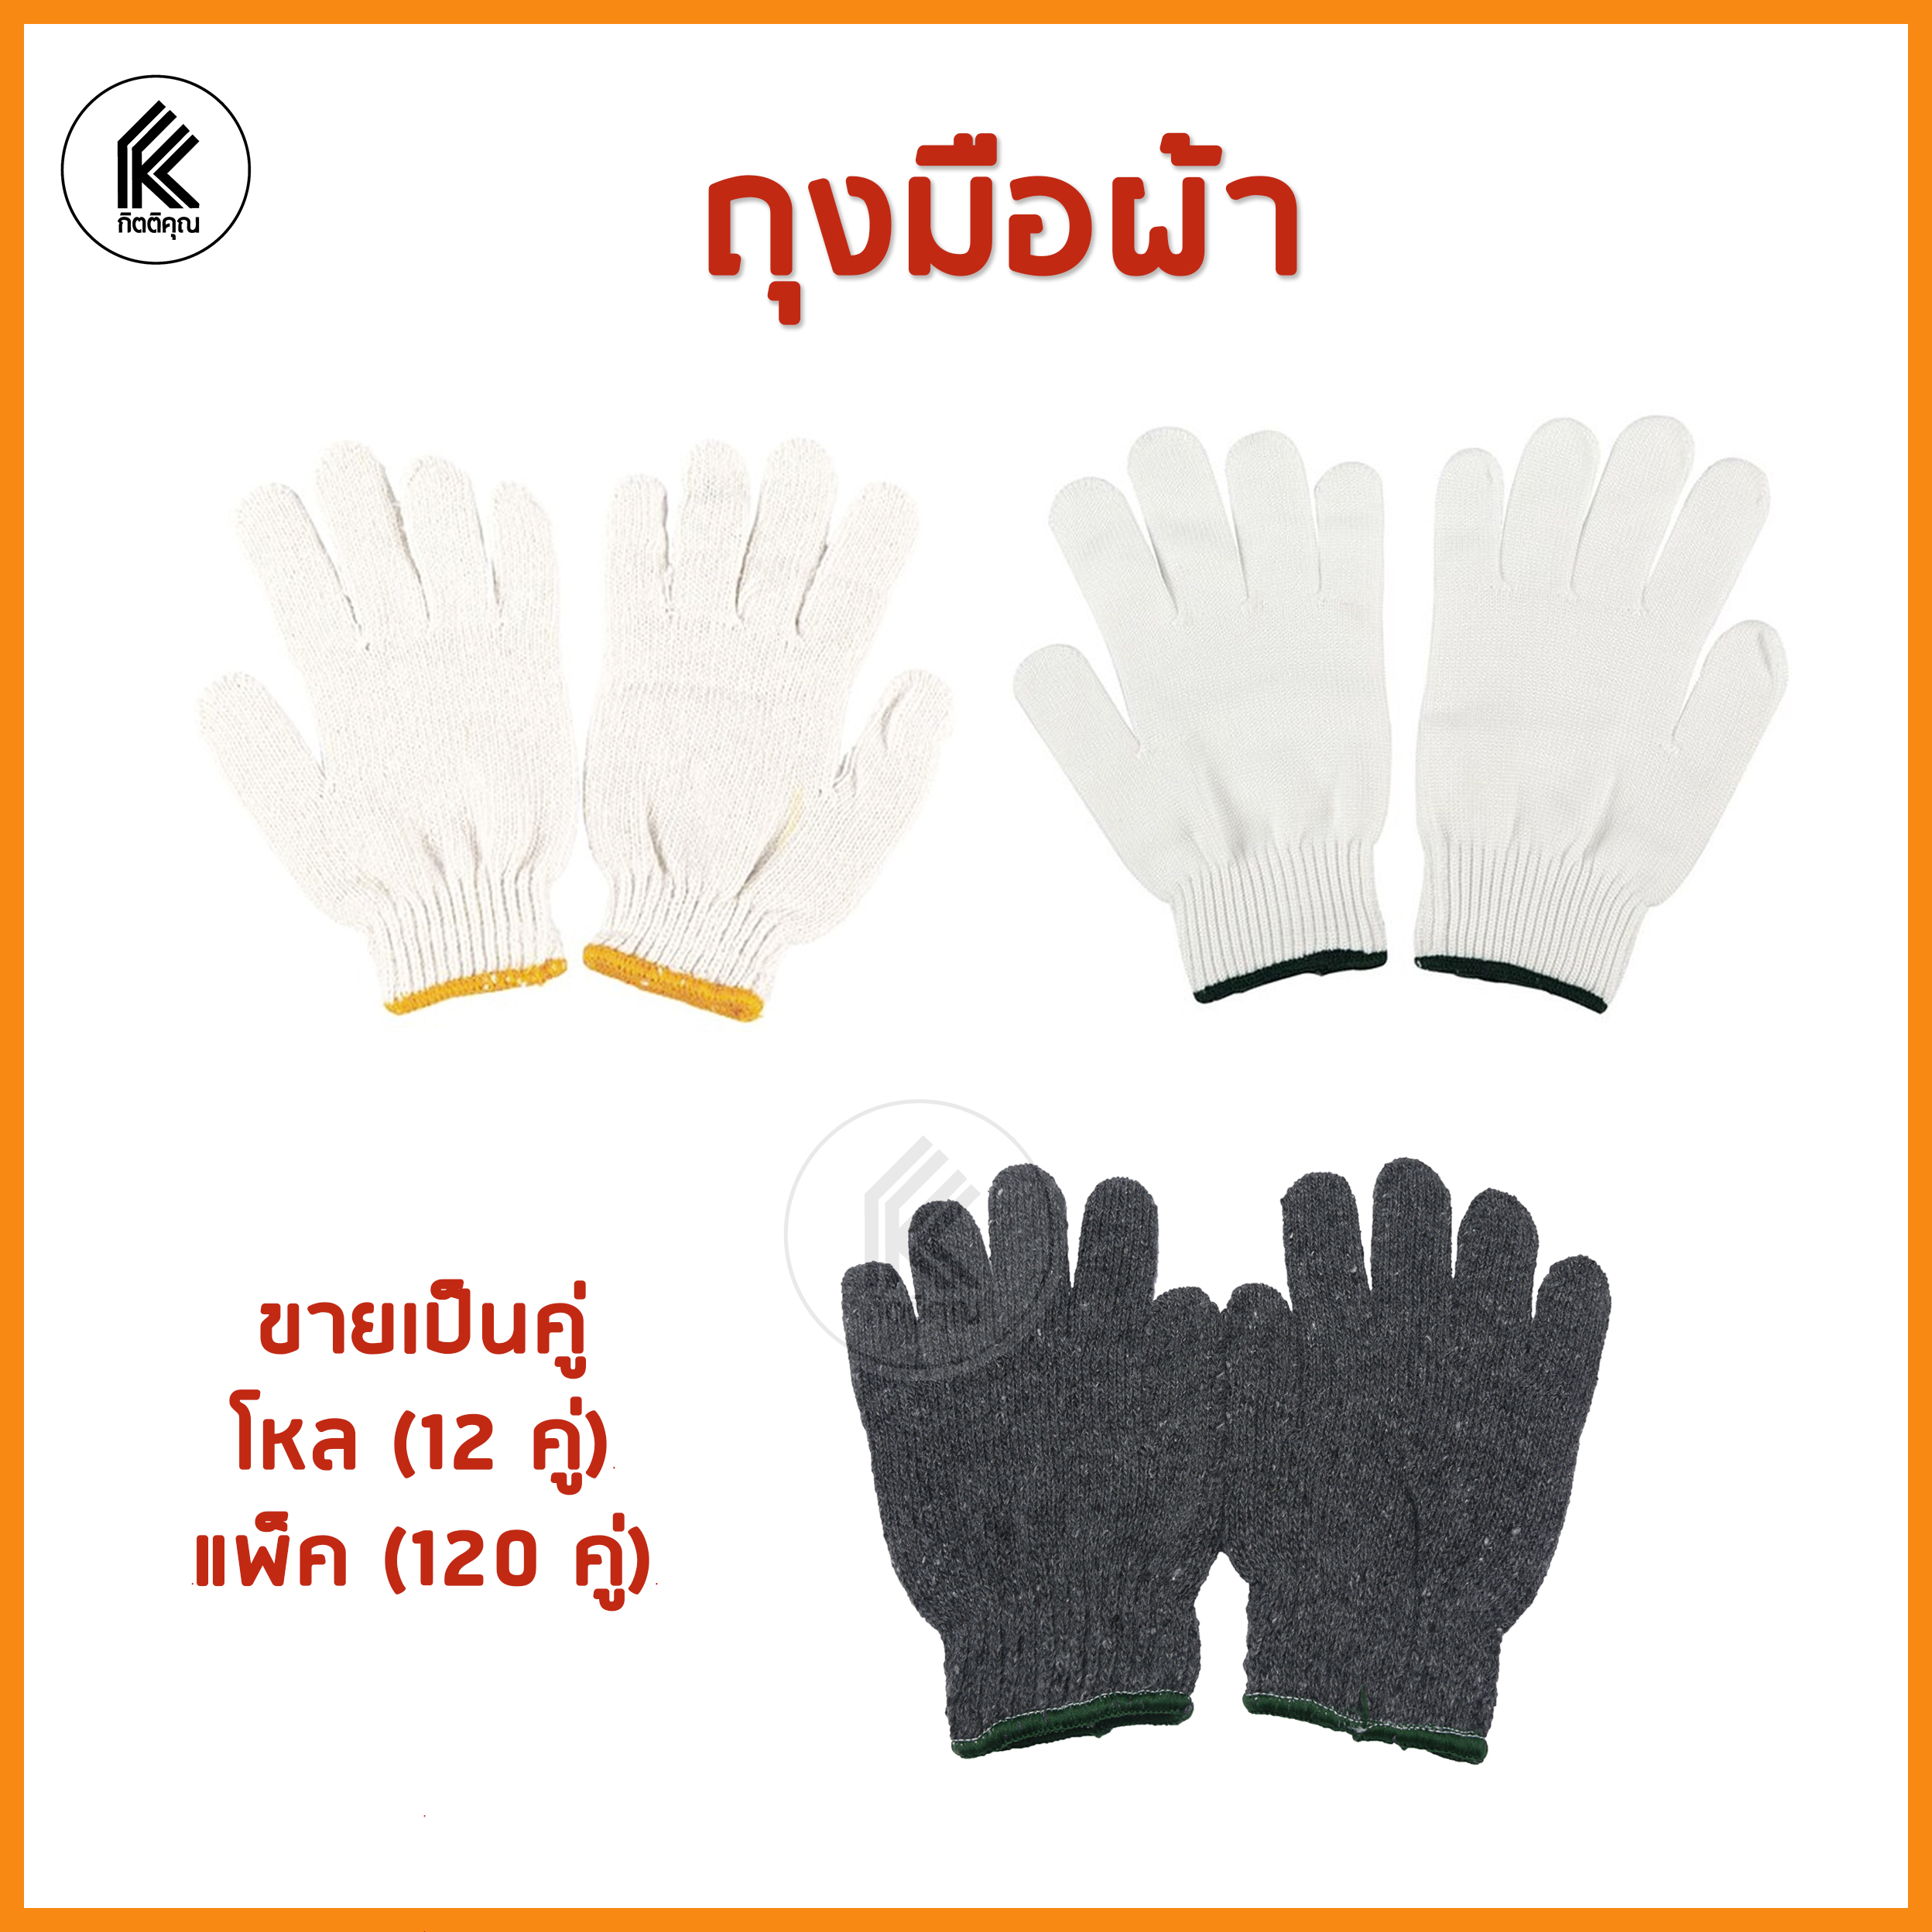 ถุงมือผ้า ขาวขอบเหลือง ขาวขอบเขียว เทา fabric gloves white grey gray ถุงมือ